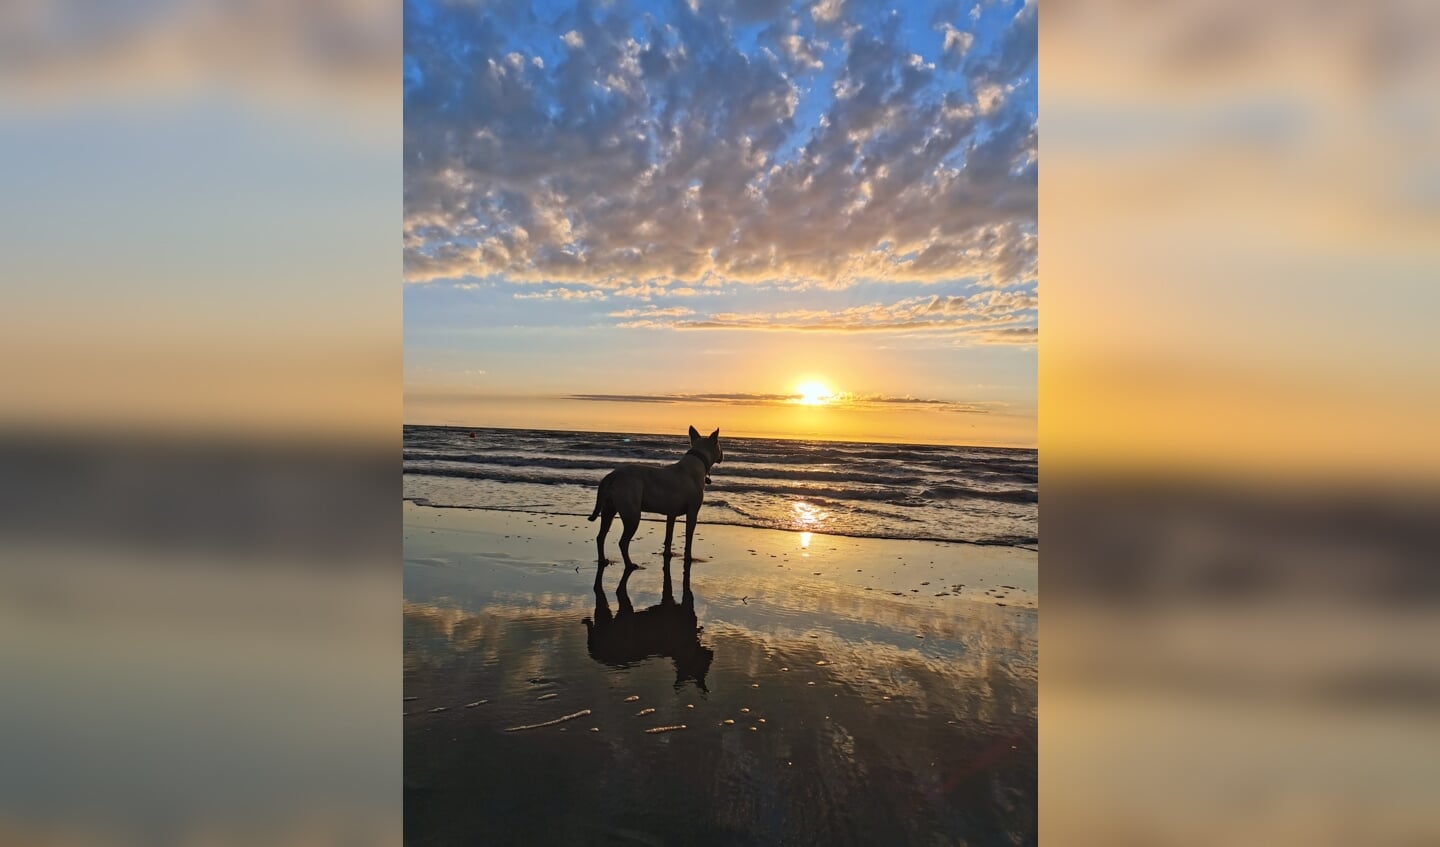 'Mijn hond Shiva. Hij geniet van de zonsondergang op zaterdag 2 juli aan de kust in Bredene bij onze Belgische buren.
Deze foto is speciaal voor mij omdat mijn lieve hond erop staat en het is vastgelegd op een mooi moment.'